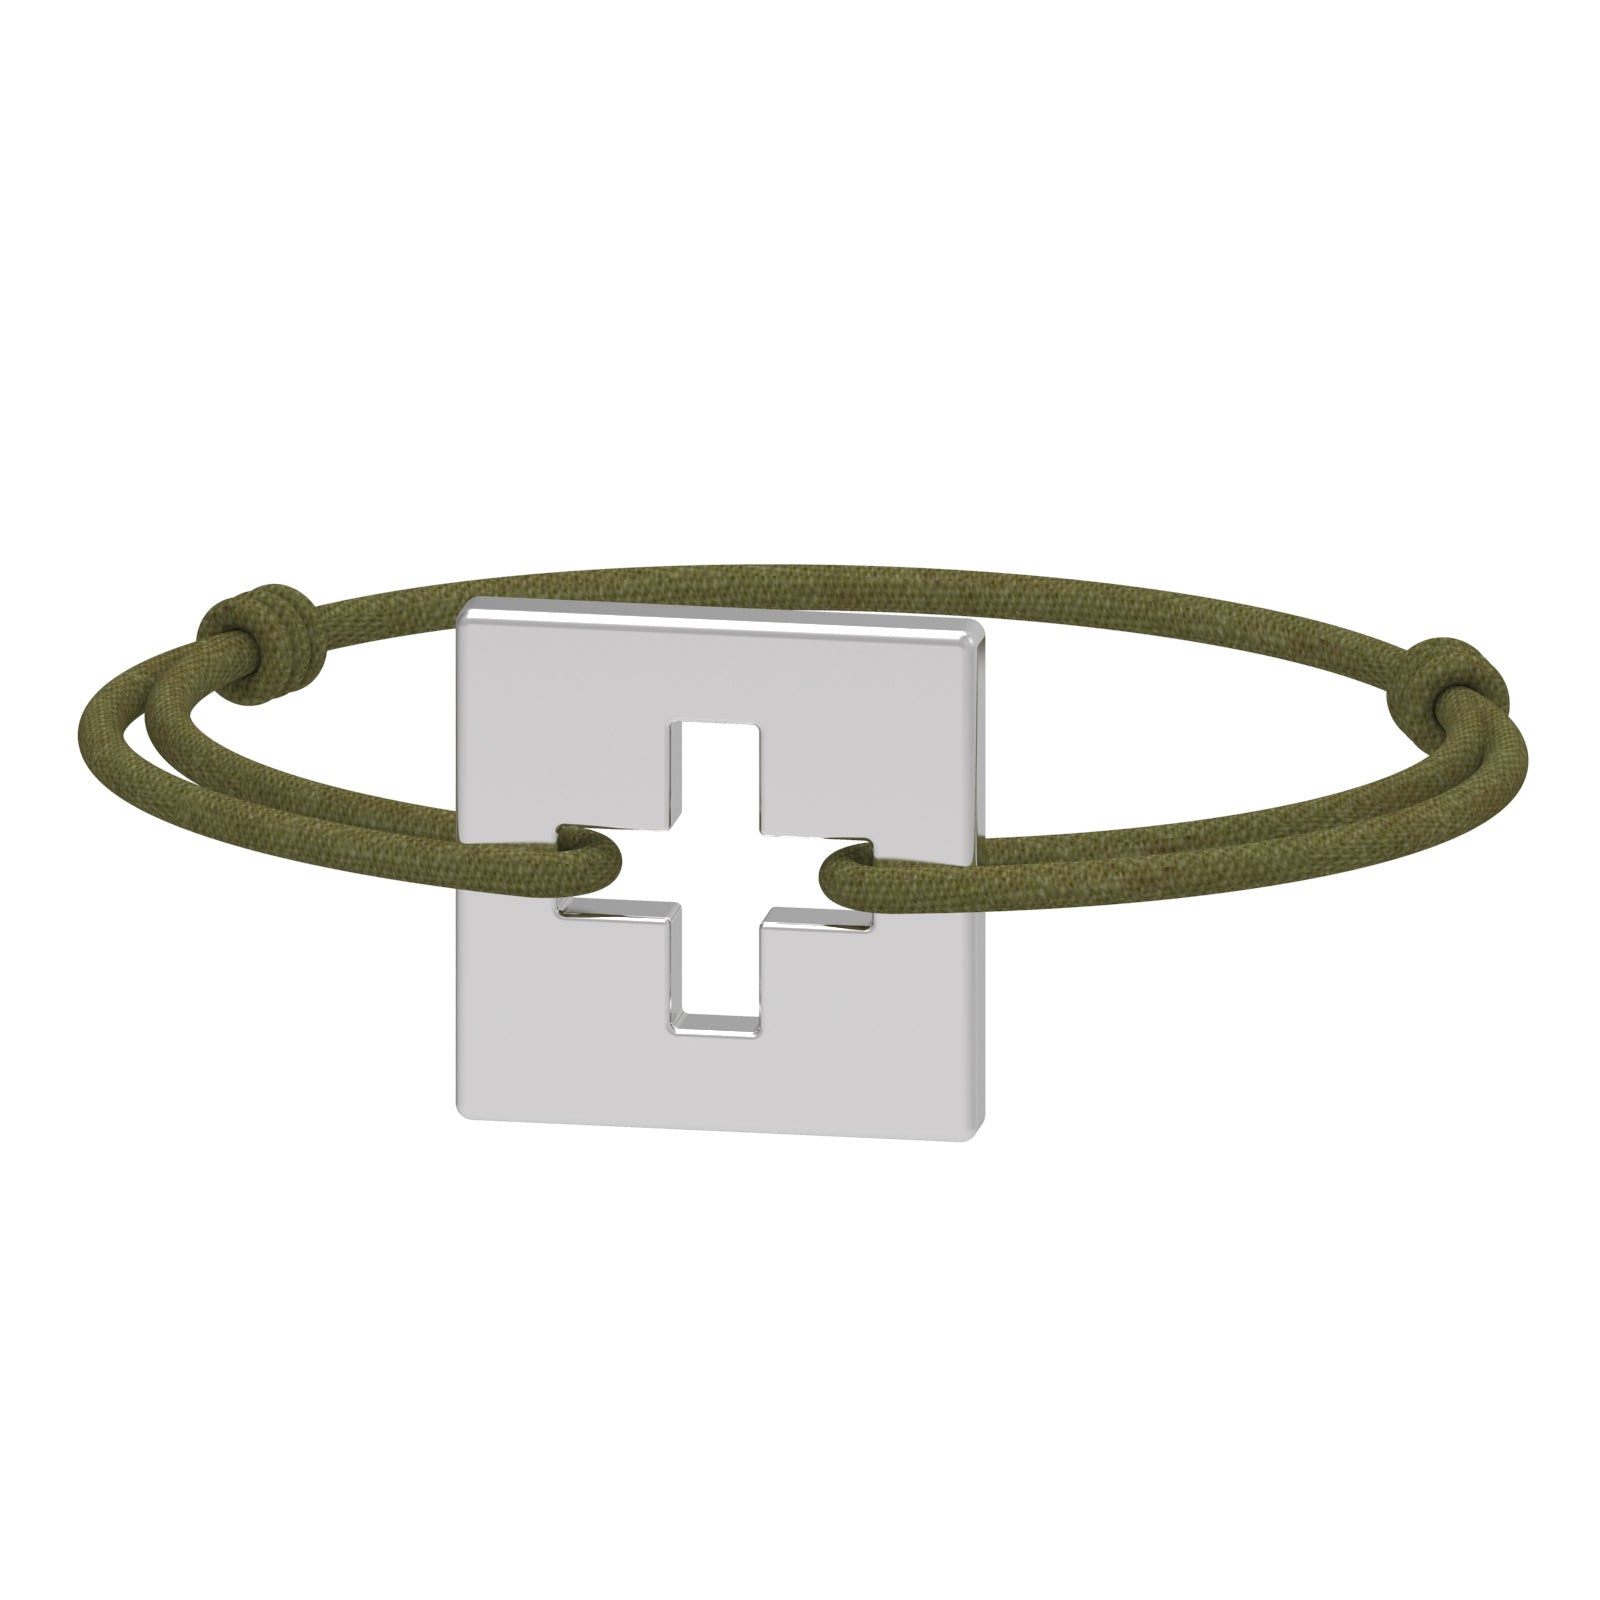 Dessin 3D du bracelet SwissFlag en argent rhodié et cordon vert